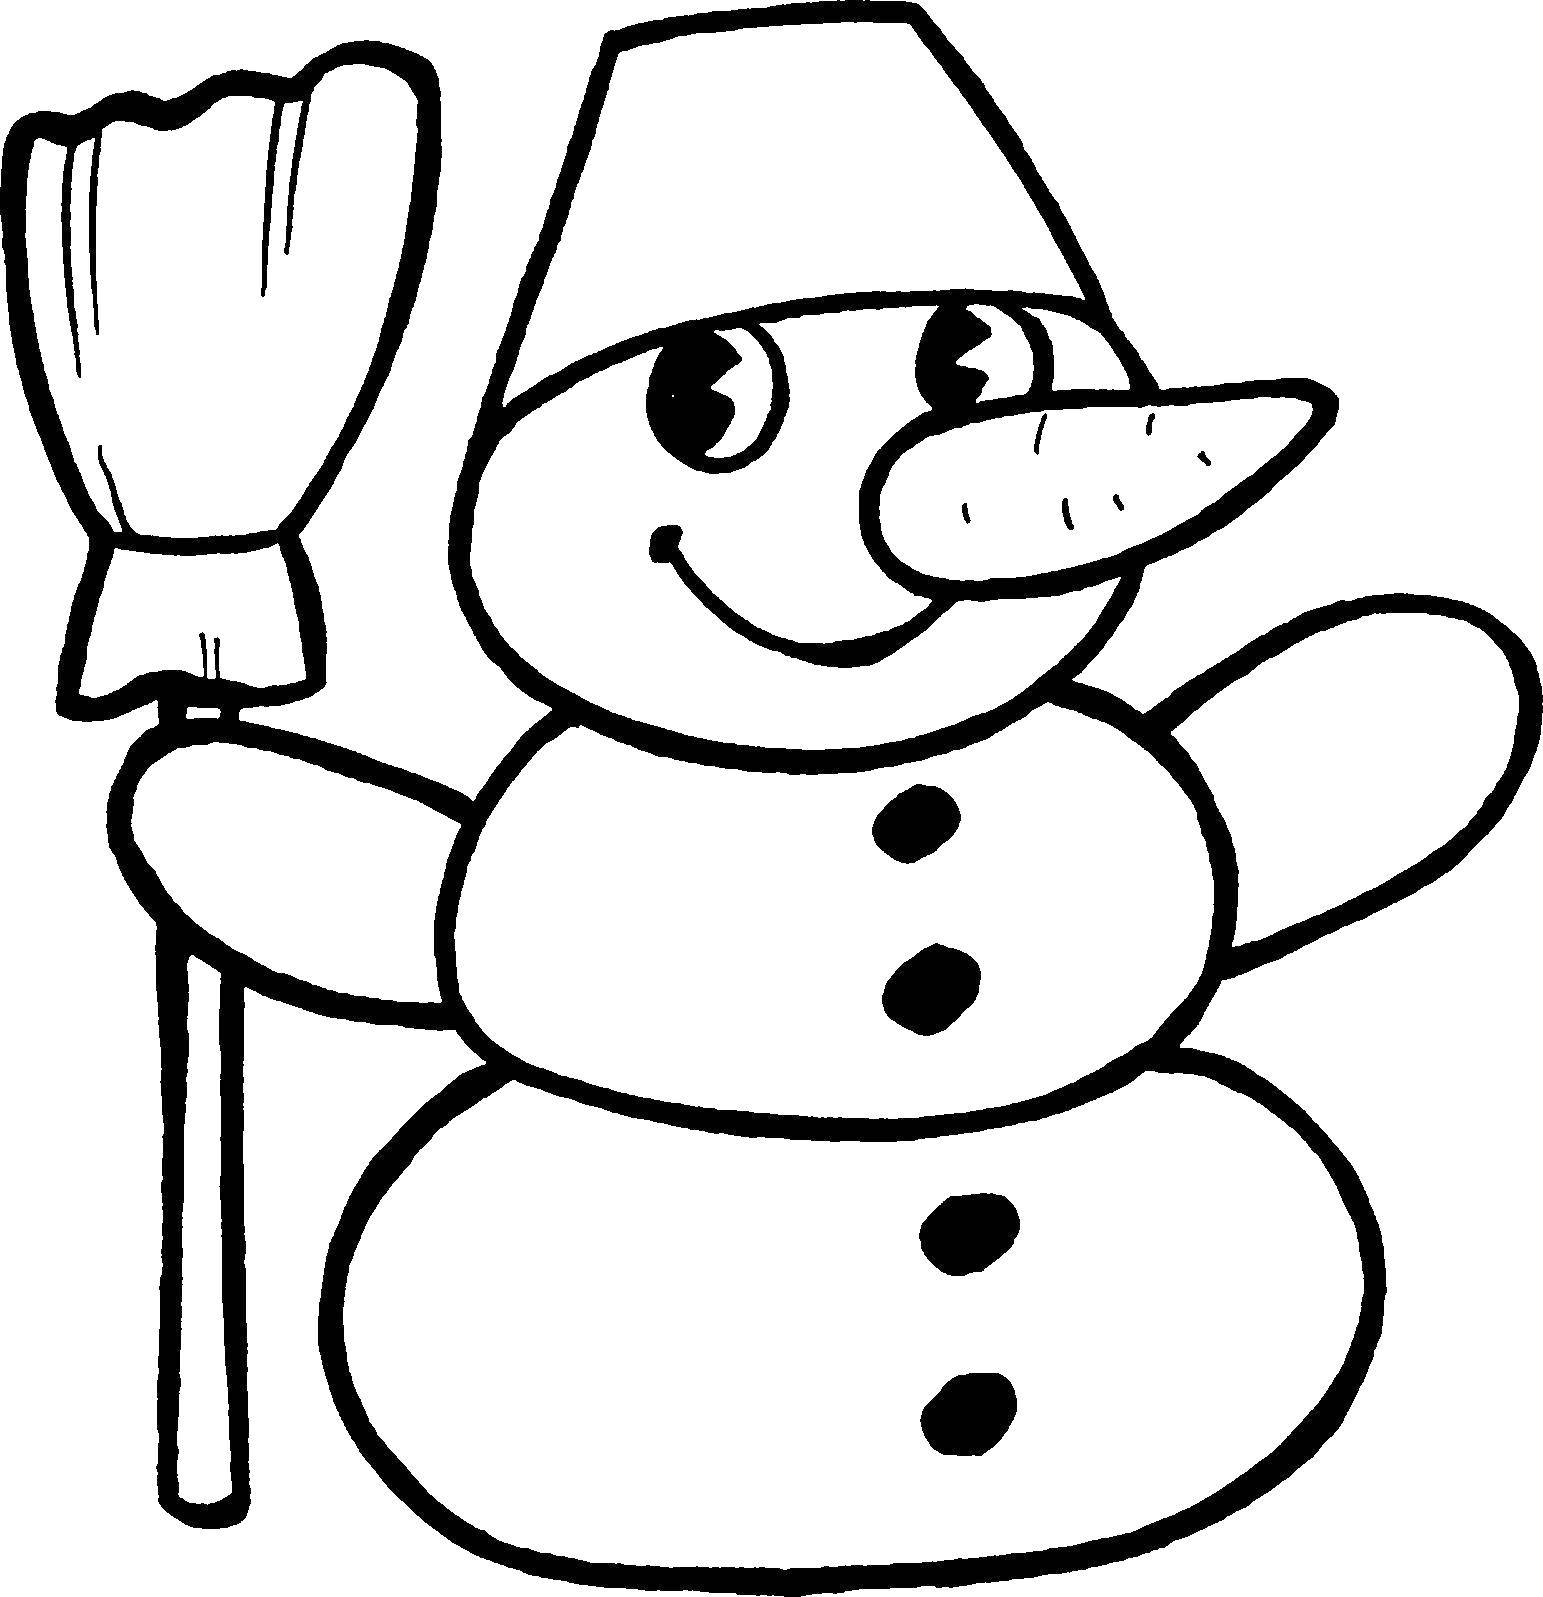 Название: Раскраска Снеговик. Категория: Раскраски для малышей. Теги: снеговик, ведро, метла.